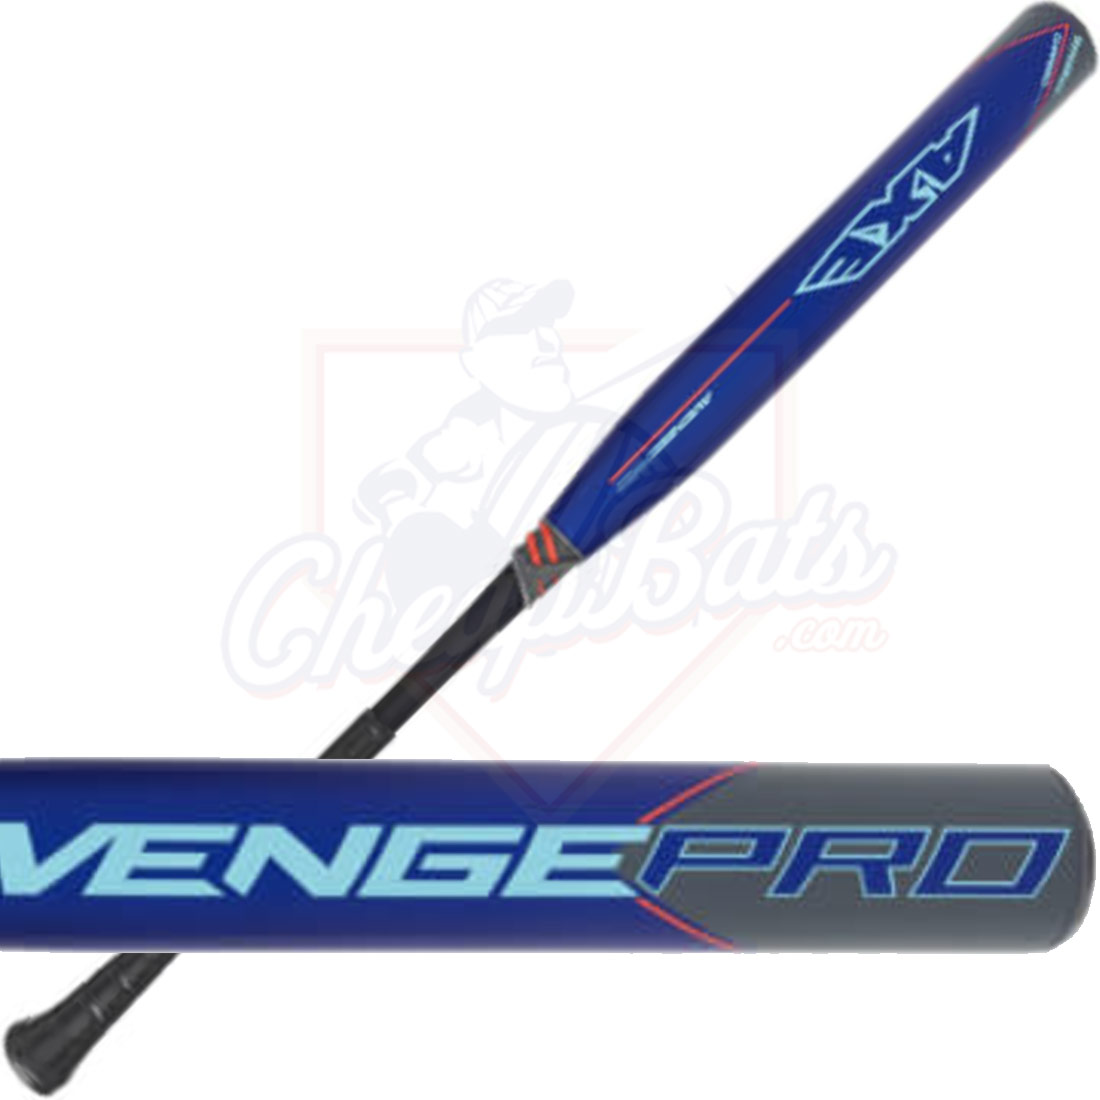 2023 Axe Avenge Pro Flared Senior Slowpitch Softball Bat SSUSA L177K-FLR